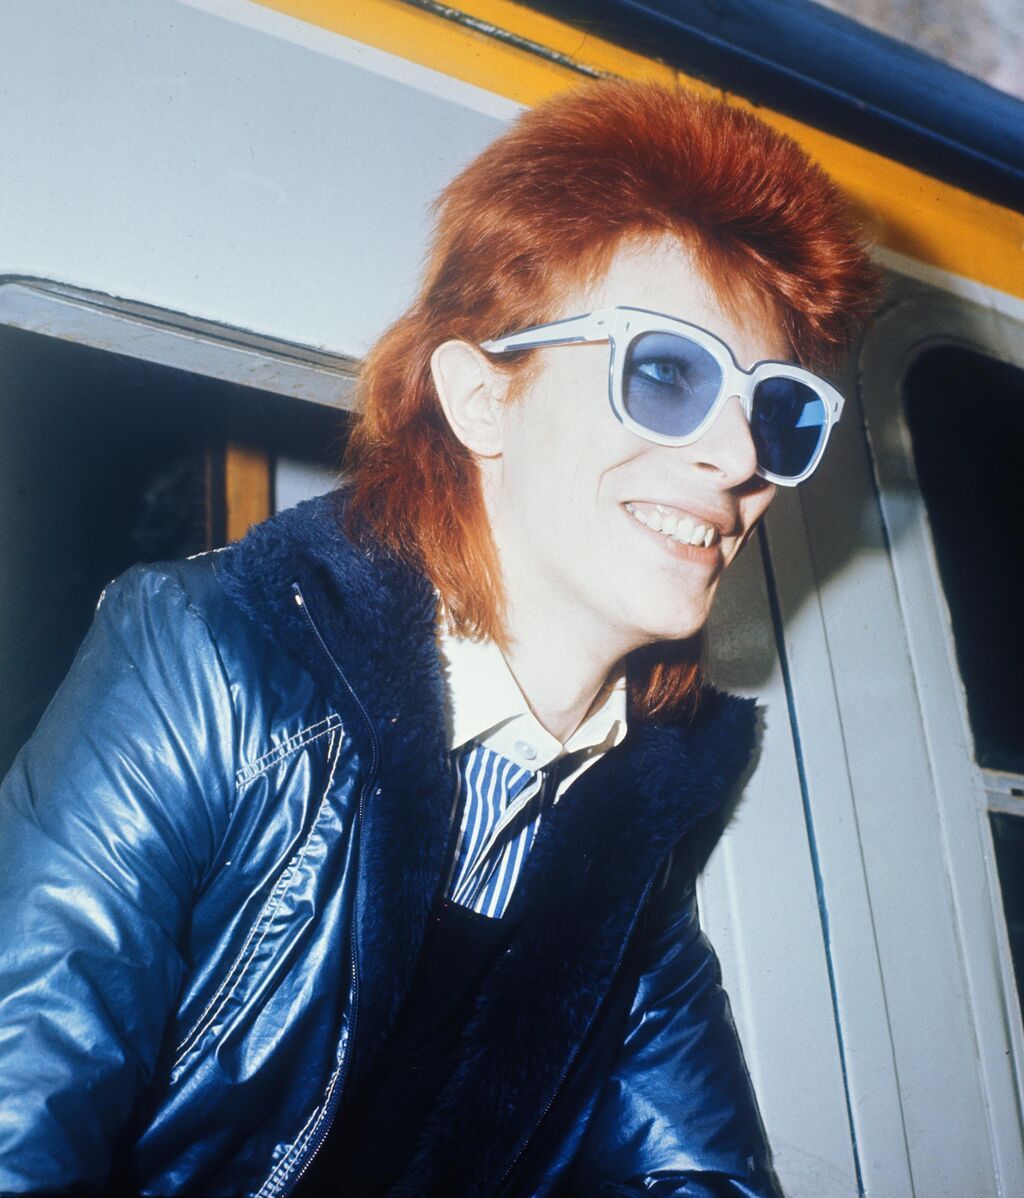 David Bowie creó una tendencia que todavía sigue siendo fuente de inspiración para muchos artistas.